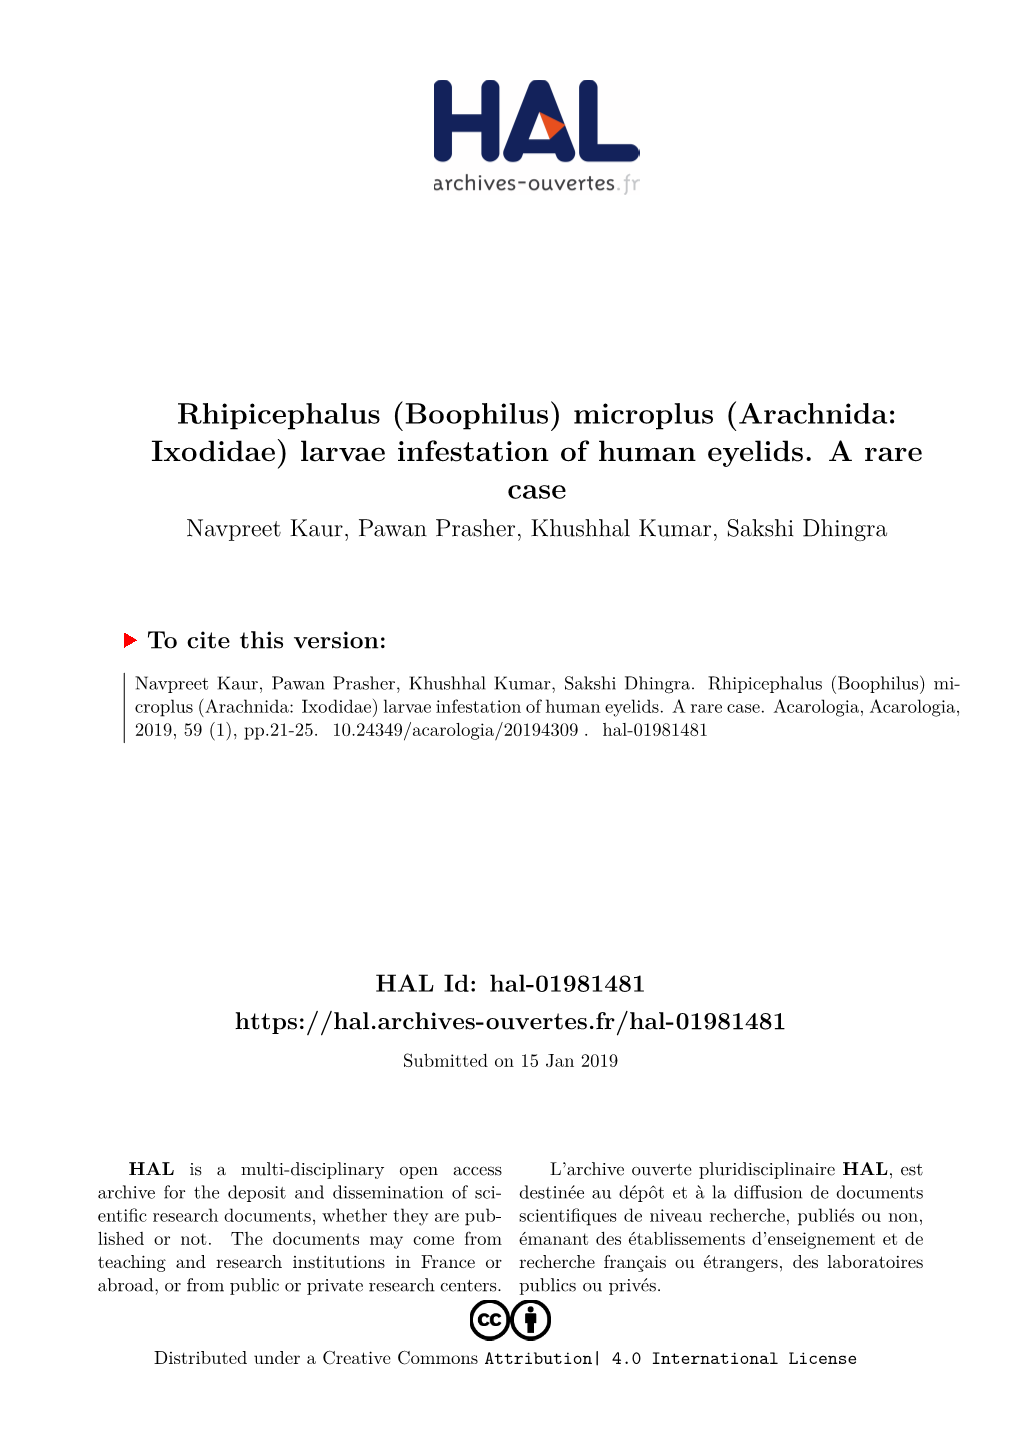 Rhipicephalus (Boophilus) Microplus (Arachnida: Ixodidae) Larvae Infestation of Human Eyelids